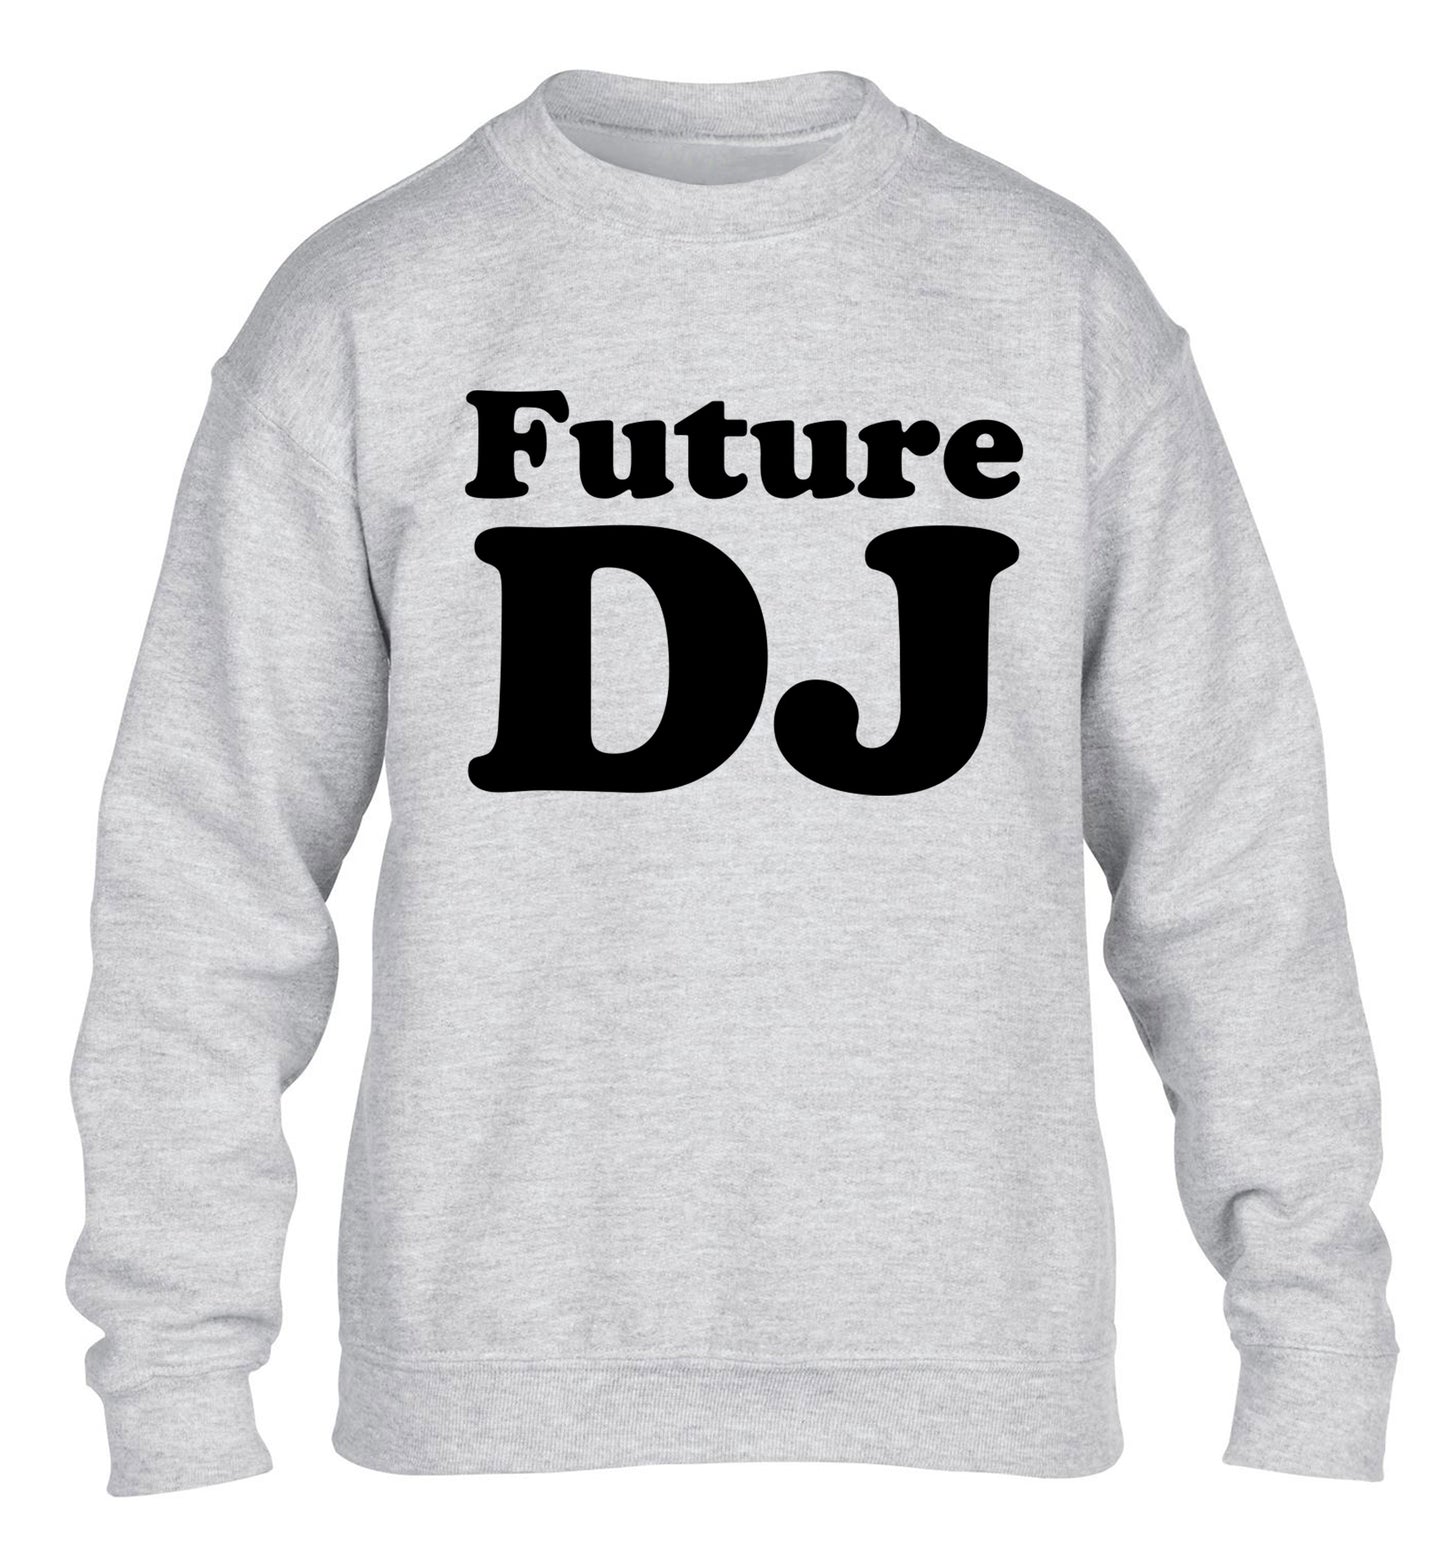 Future DJ children's grey sweater 12-14 Years